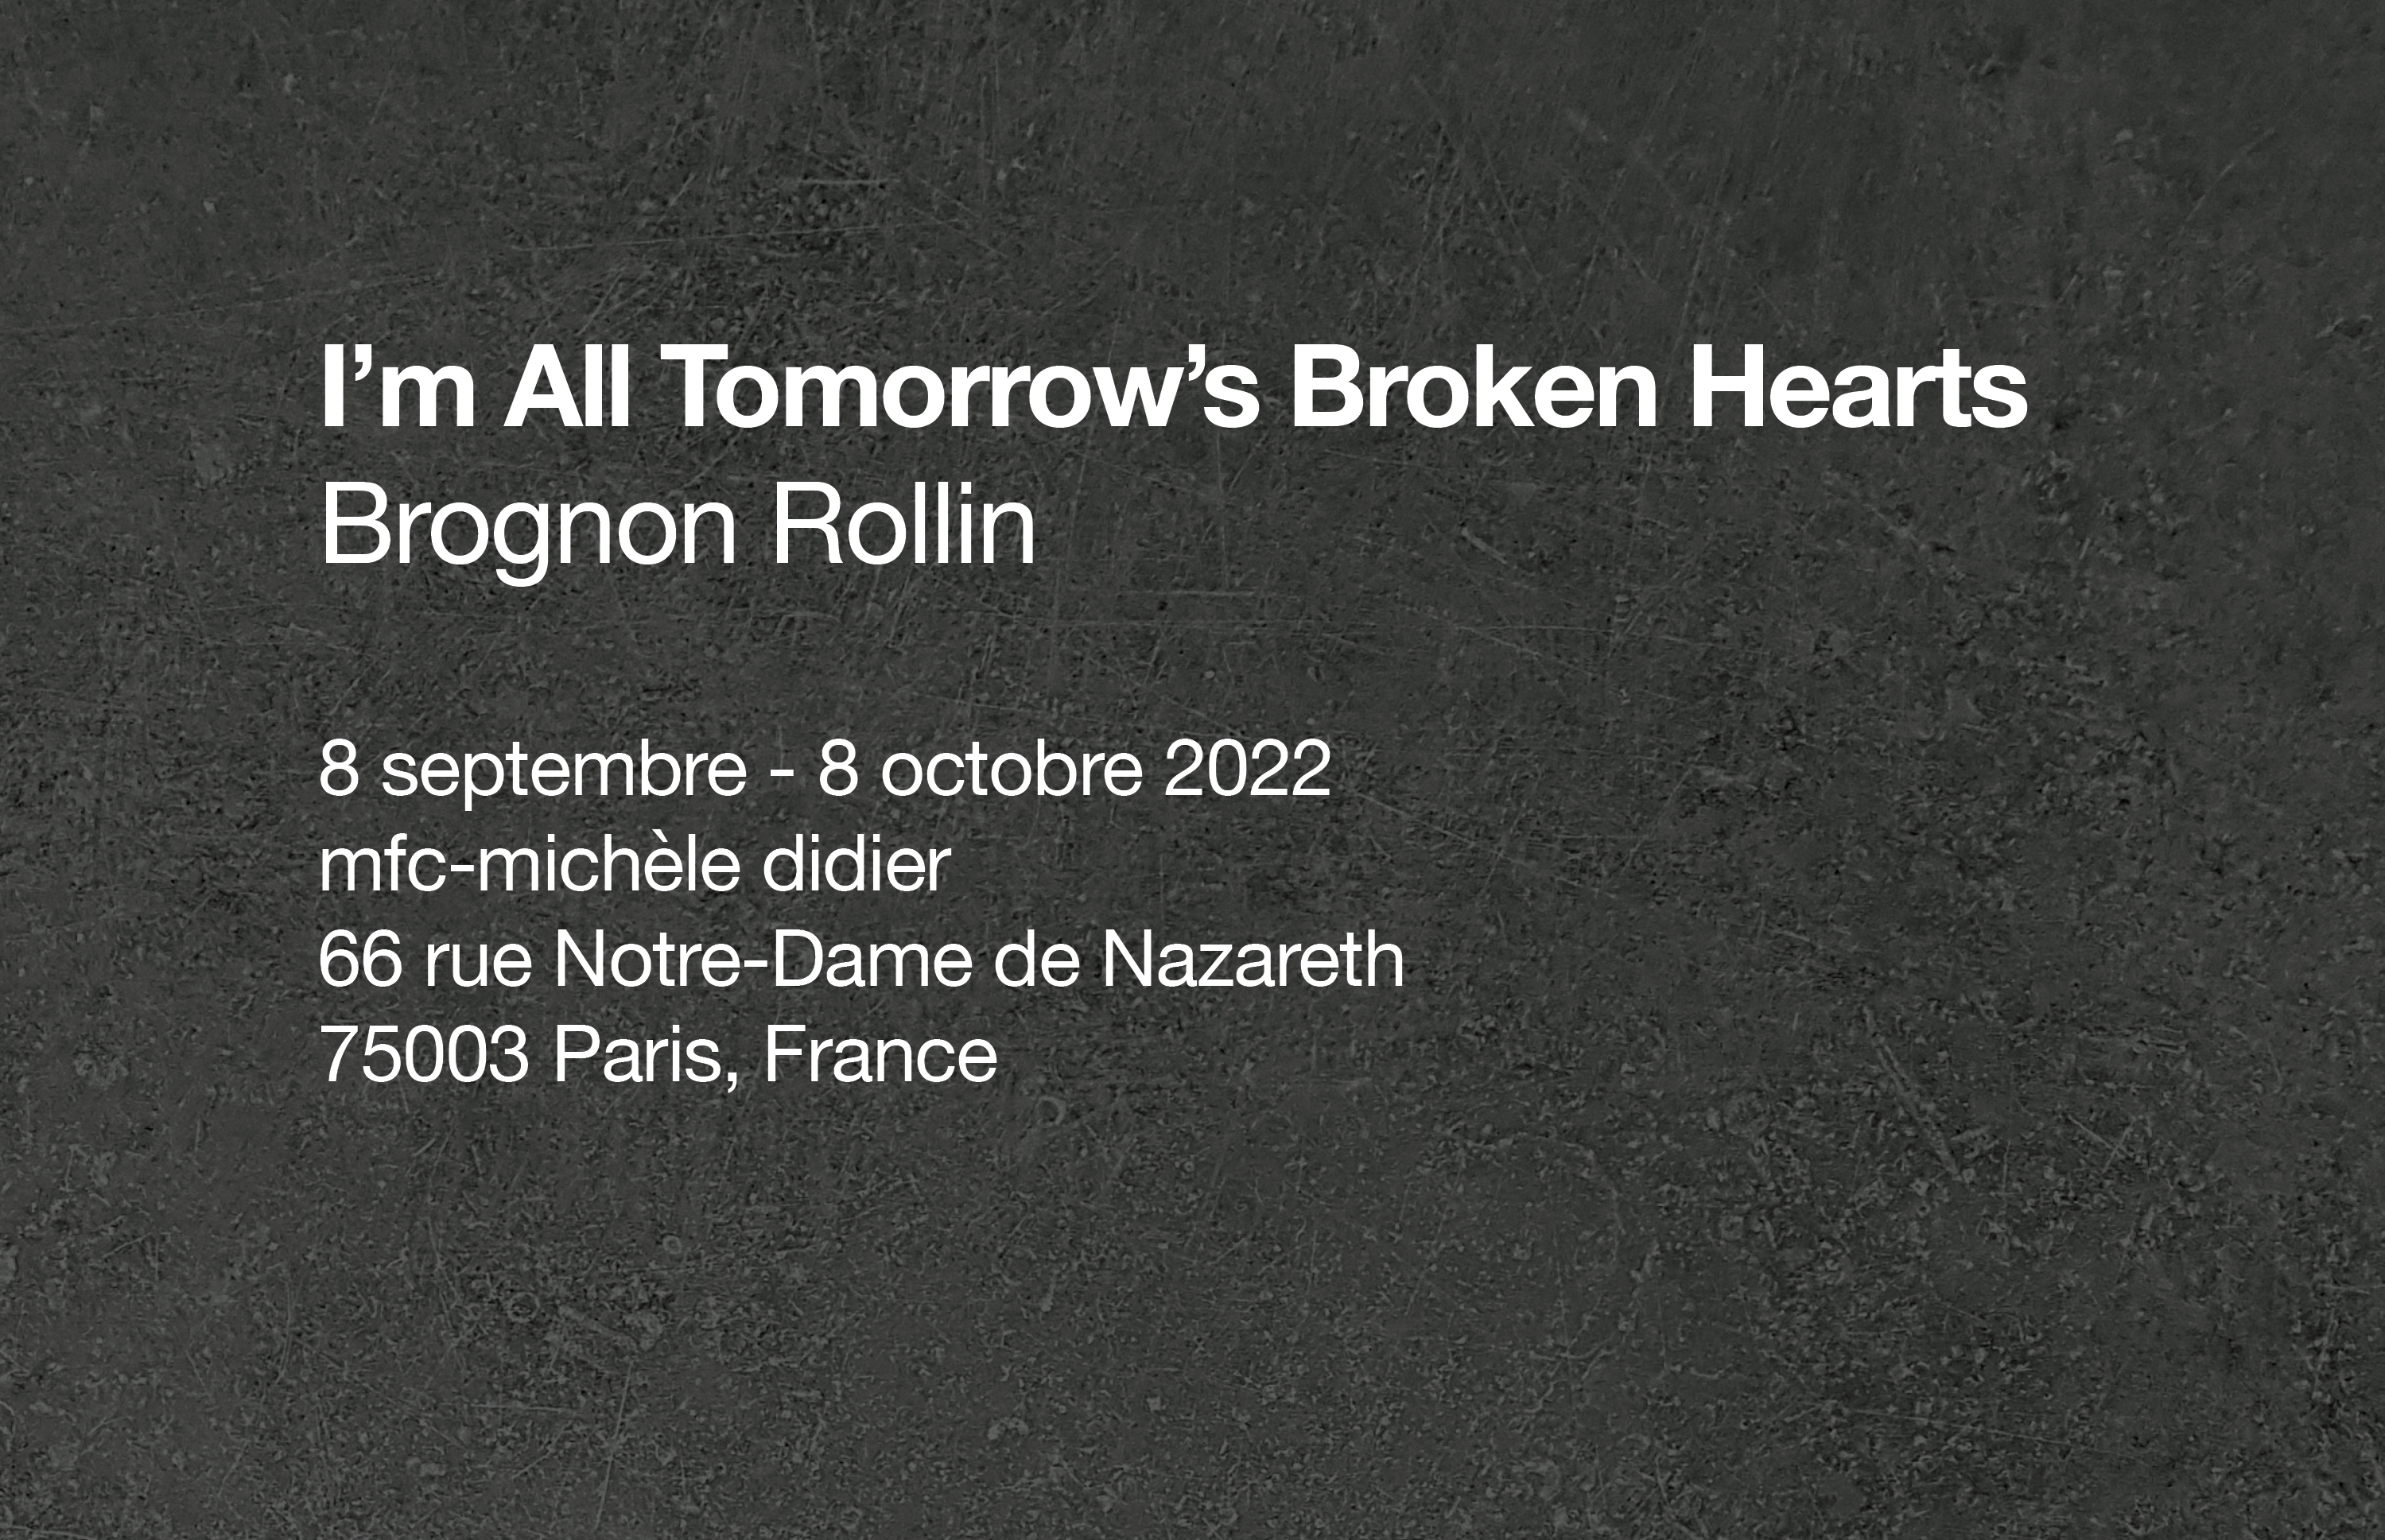 I'm All Tomorrow's Broken Hearts